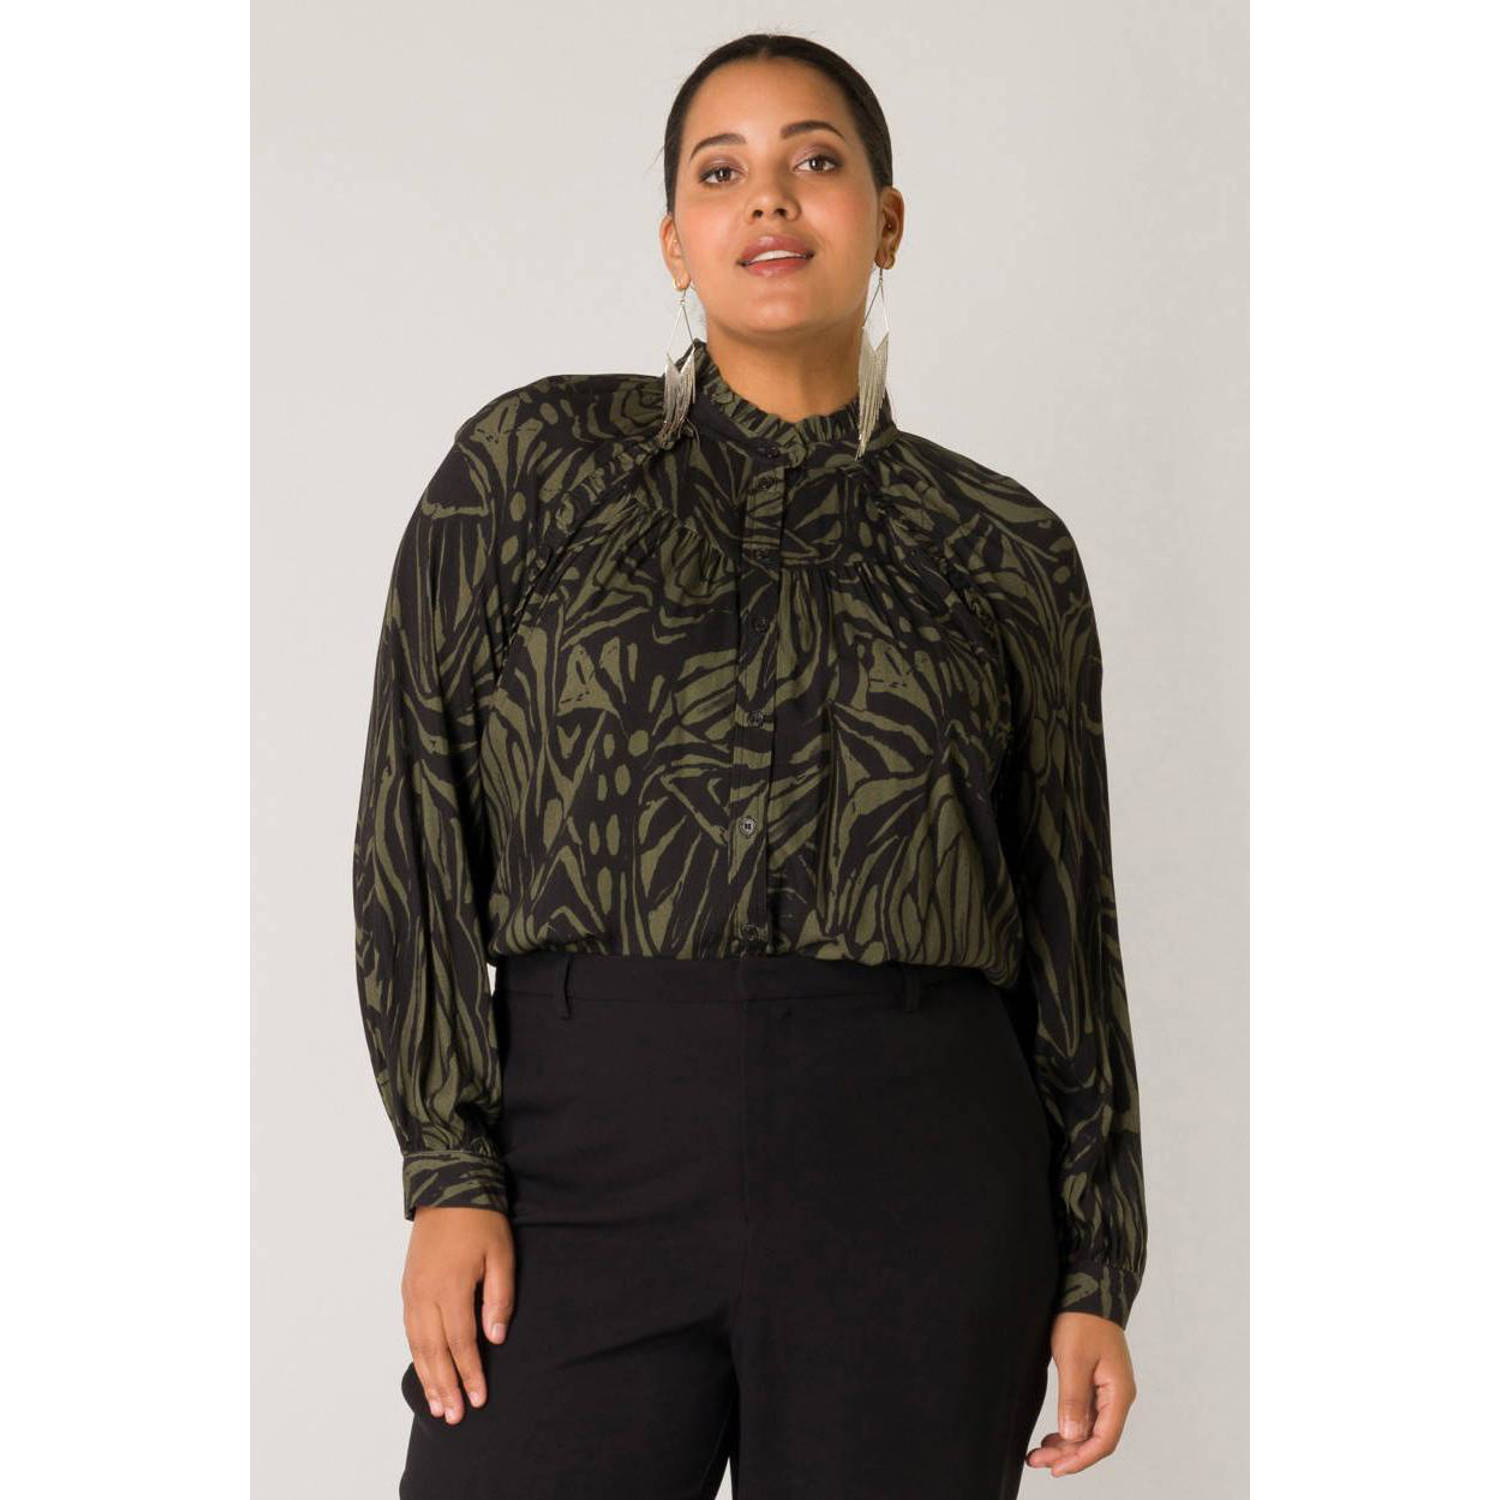 Yesta blouse met all over print zwart olijfgroen